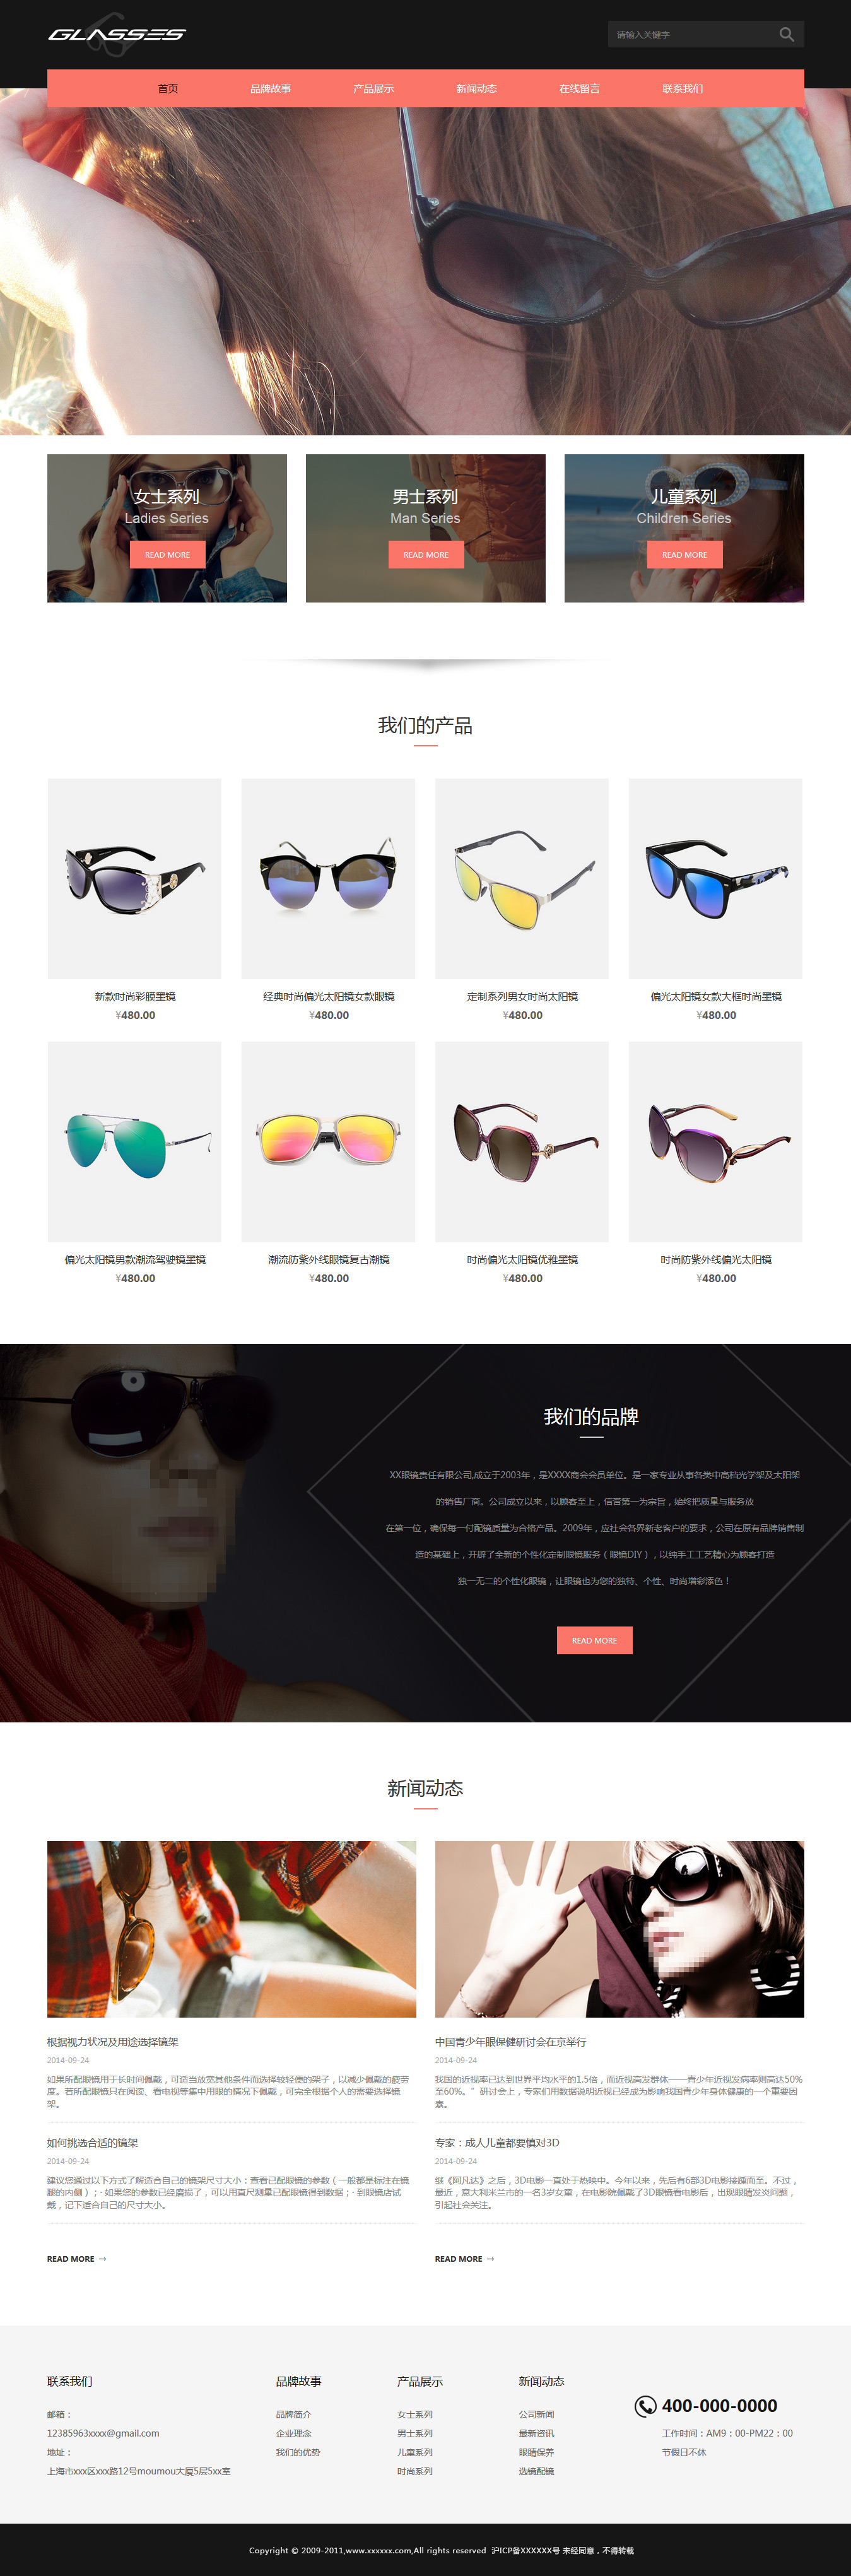 企业网站精美模板-glasses-1031378